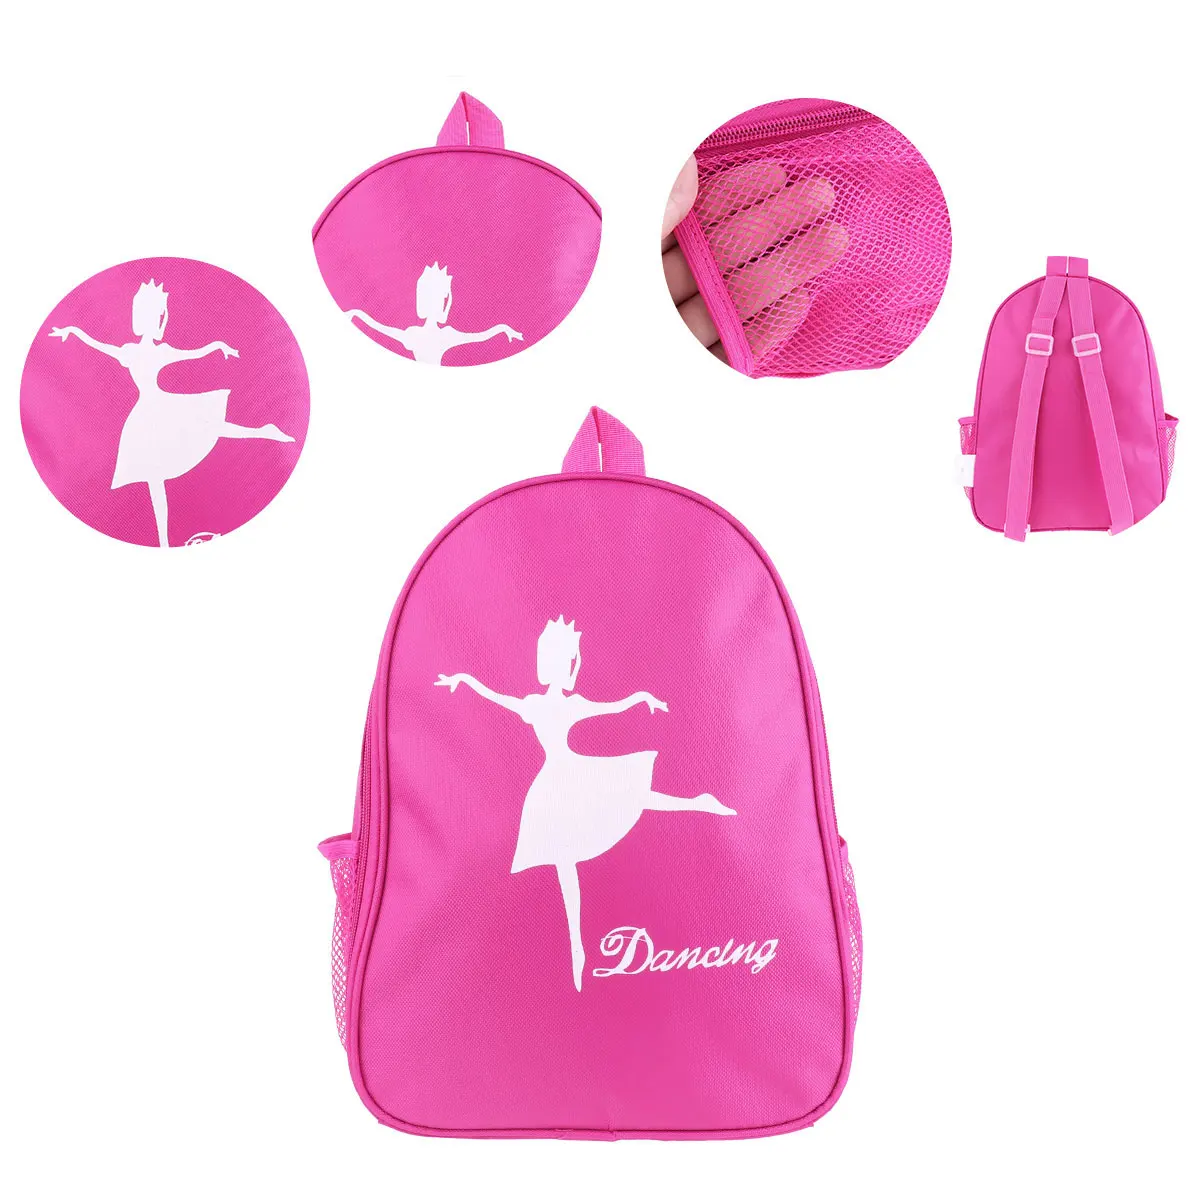 Детская Балетная сумка для девочек, Танцевальная сумка, спортивная сумка для балерины, милая школьная сумка рюкзак, Танцевальная сумка на плечо с принтом для девочек